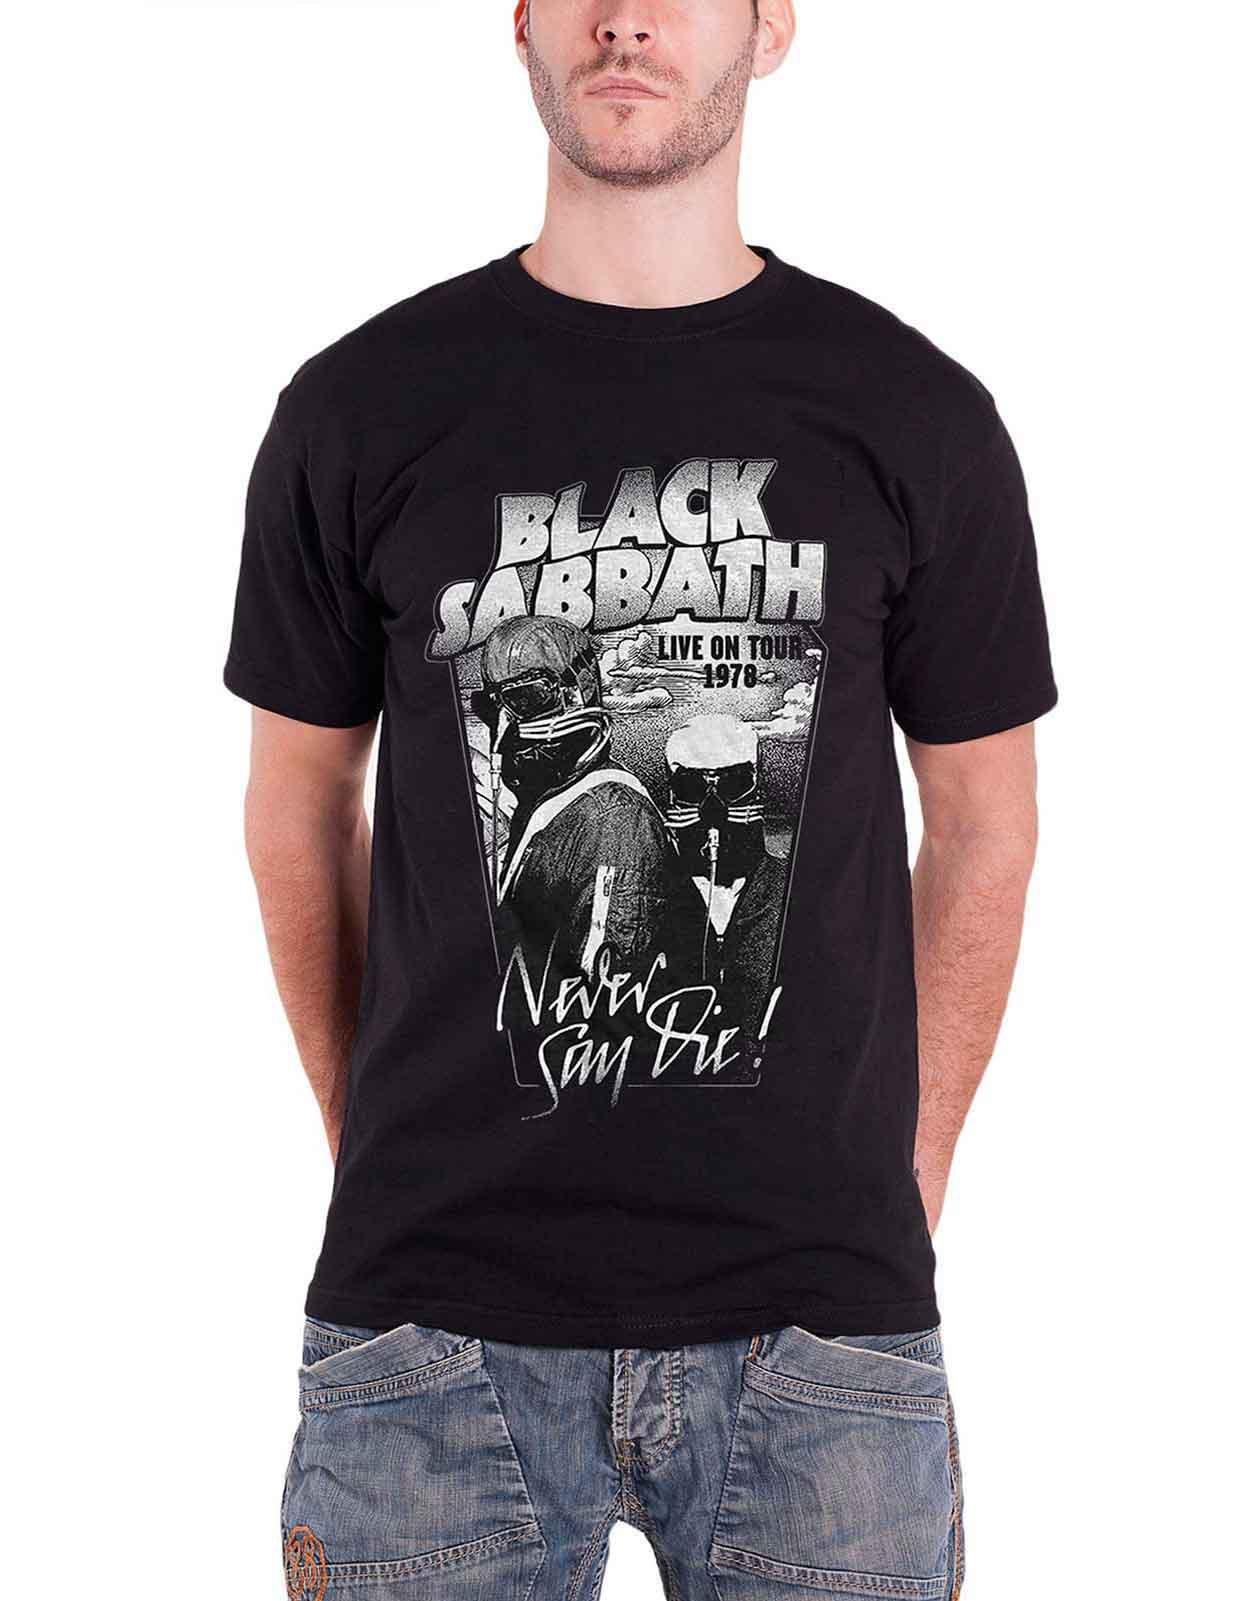 Черная футболка Never Say Die Live on Tour 1978 Black Sabbath, черный black sabbath never say die lp cd